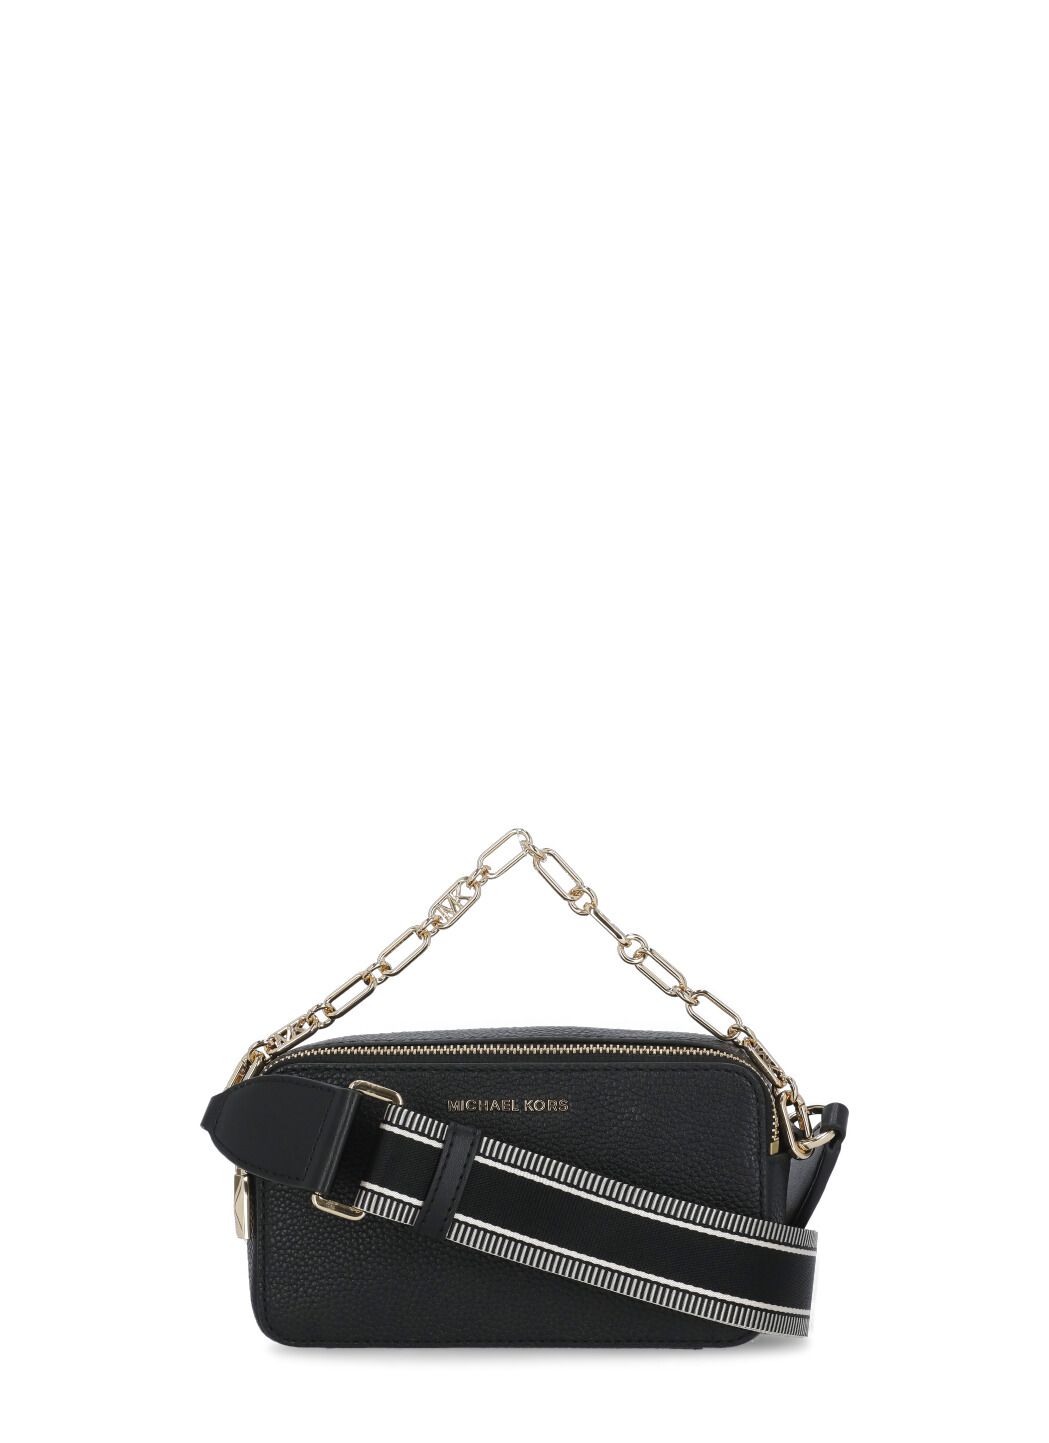 Michael Kors Jet Set Charm Brown Zip Wallet 34S1GT9Z1B-252 - Women's  accessories - Accessories